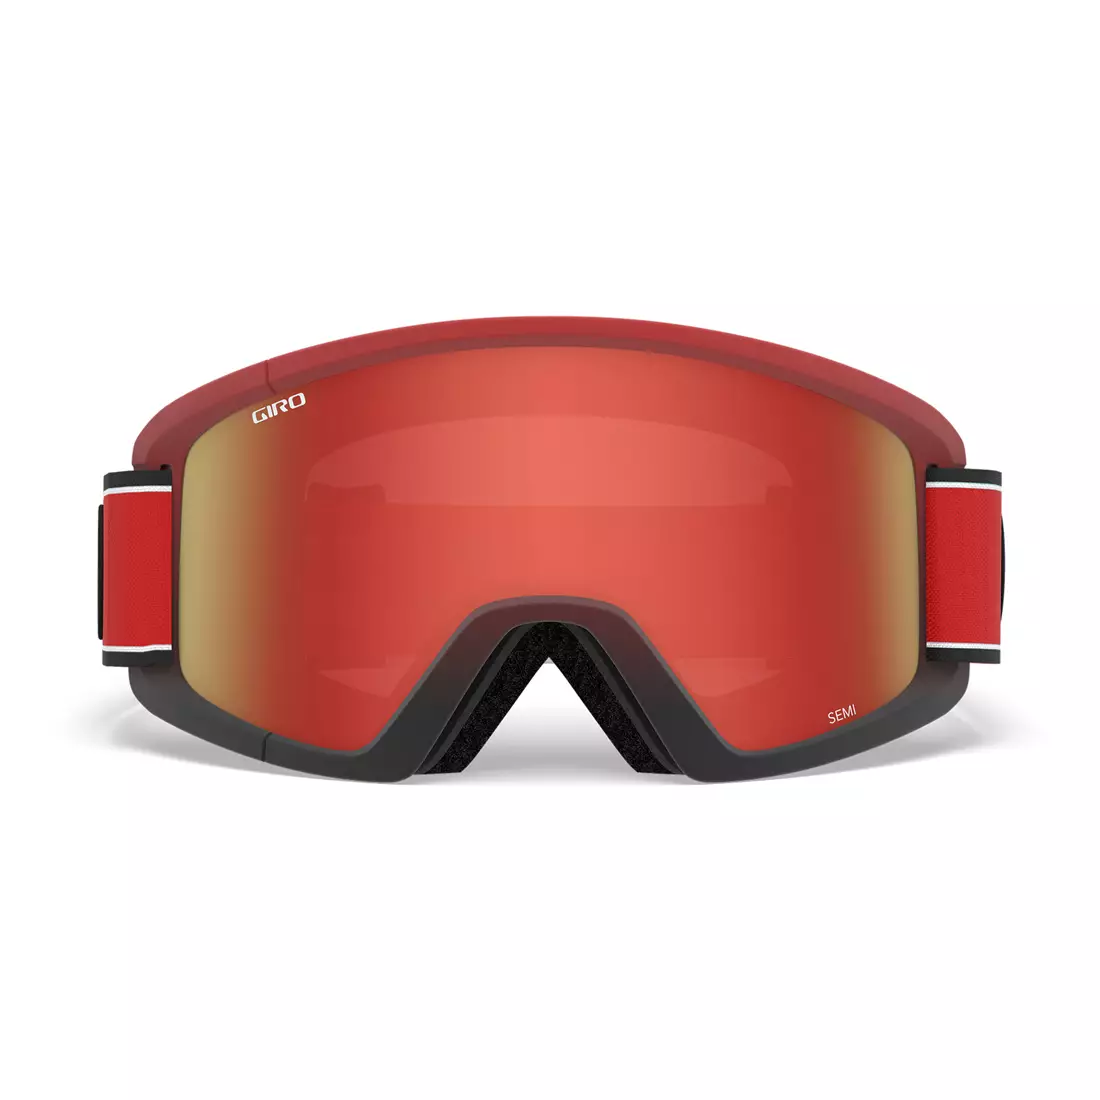 Ski/snowboard winter goggles GIRO SEMI RED ELEMENT GR-7105390